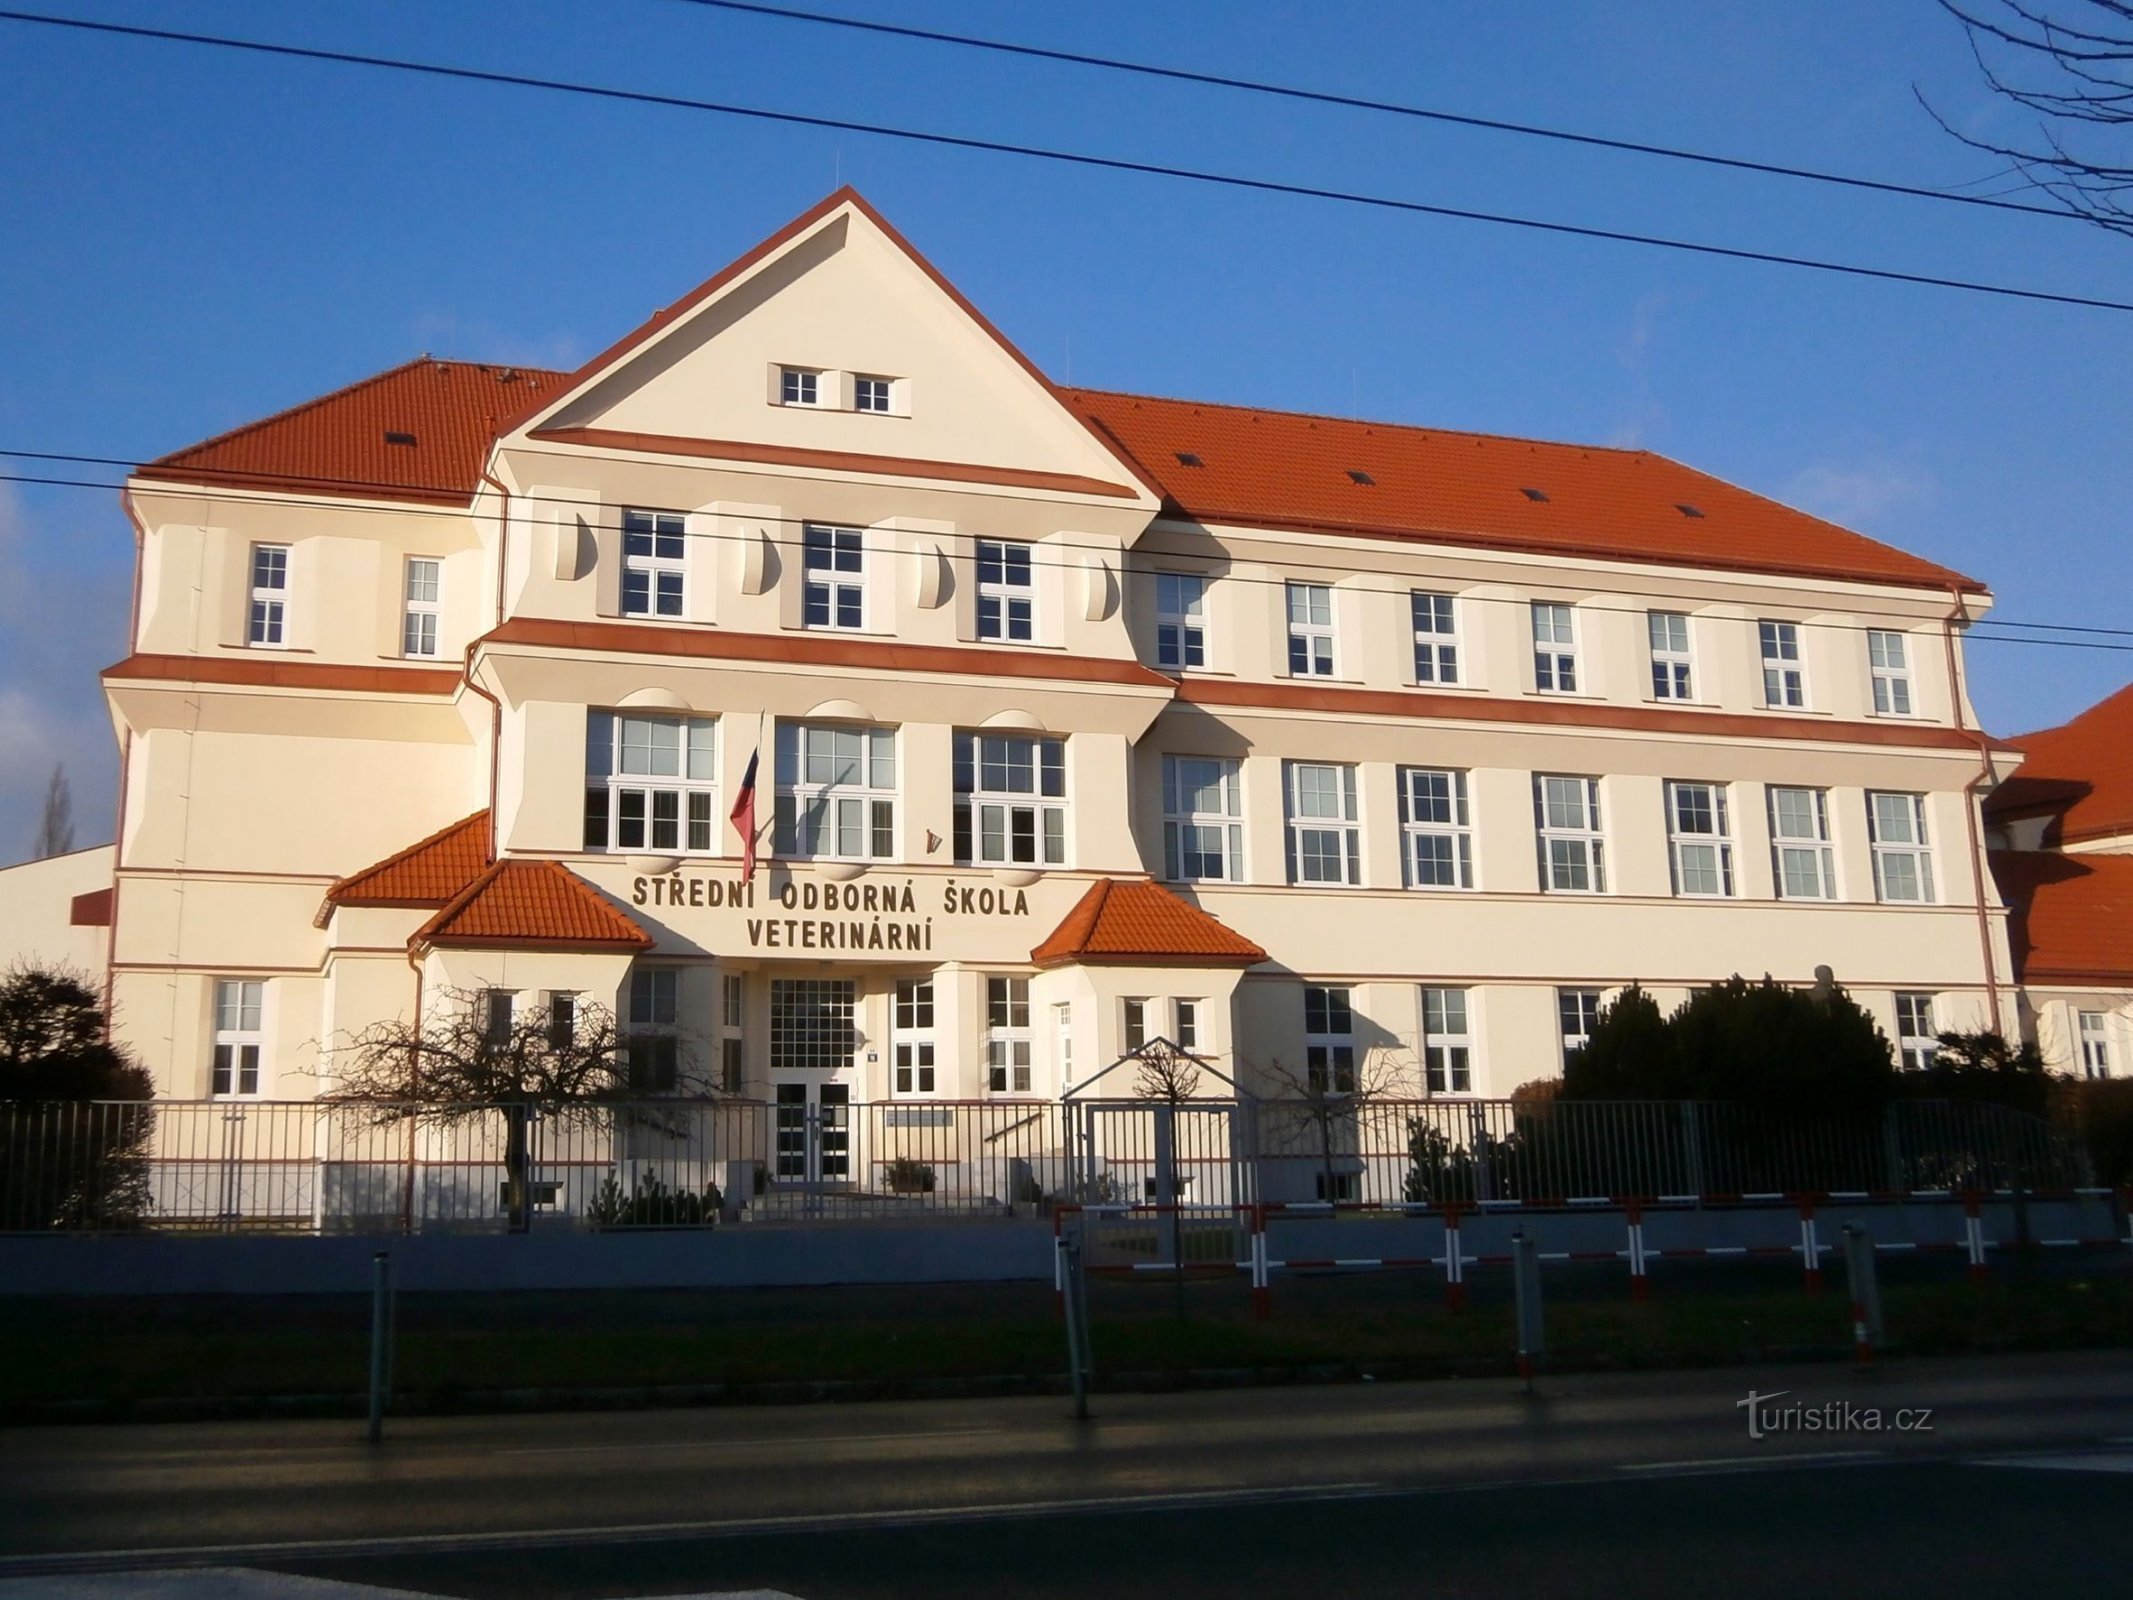 Kuklenyssa sijaitsevan kauppakorkeakoulun rakennuksen nykyinen ulkoasu (Hradec Králové, 4.1.2015. tammikuuta XNUMX)